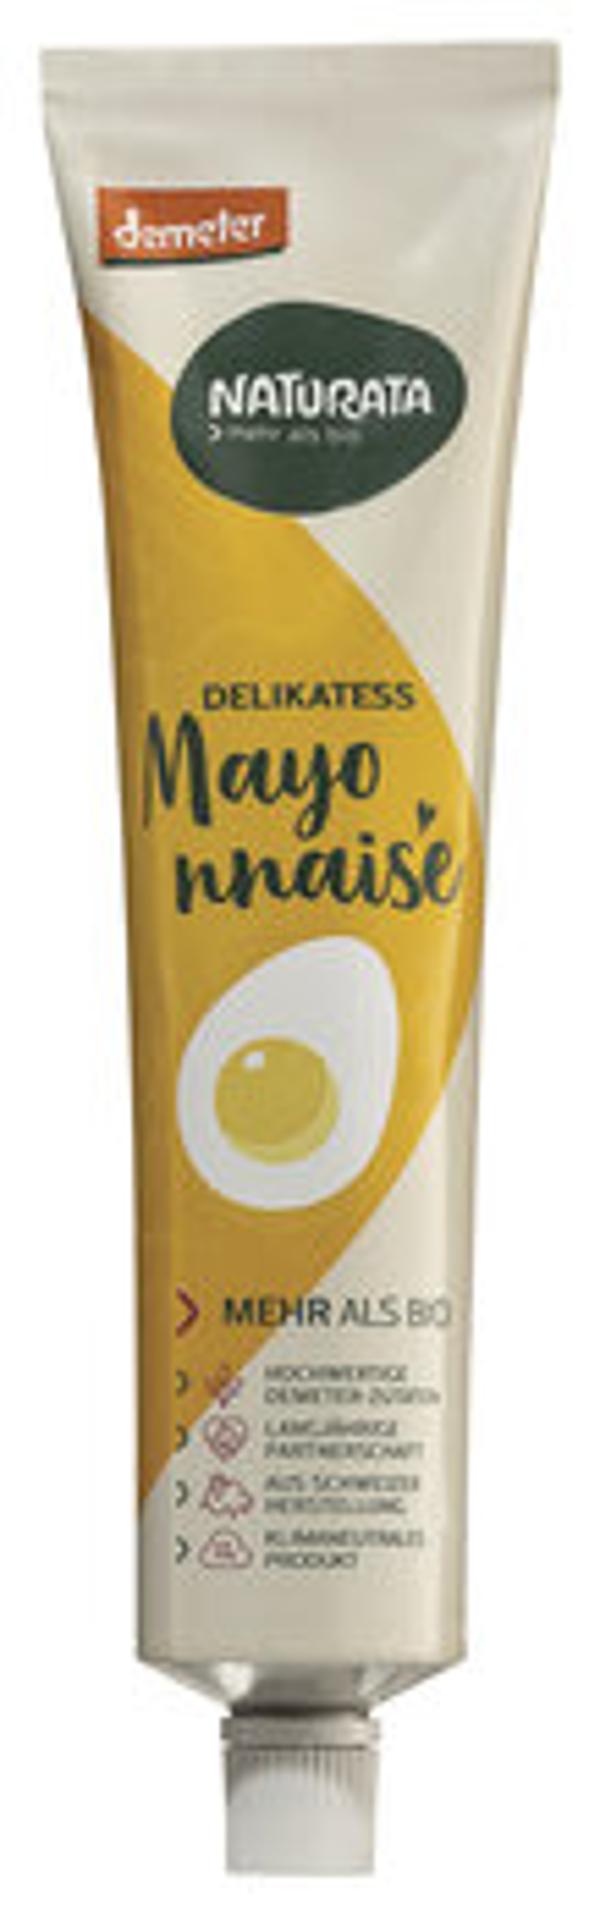 Produktfoto zu Delikatess Mayonnaise, 185 ml